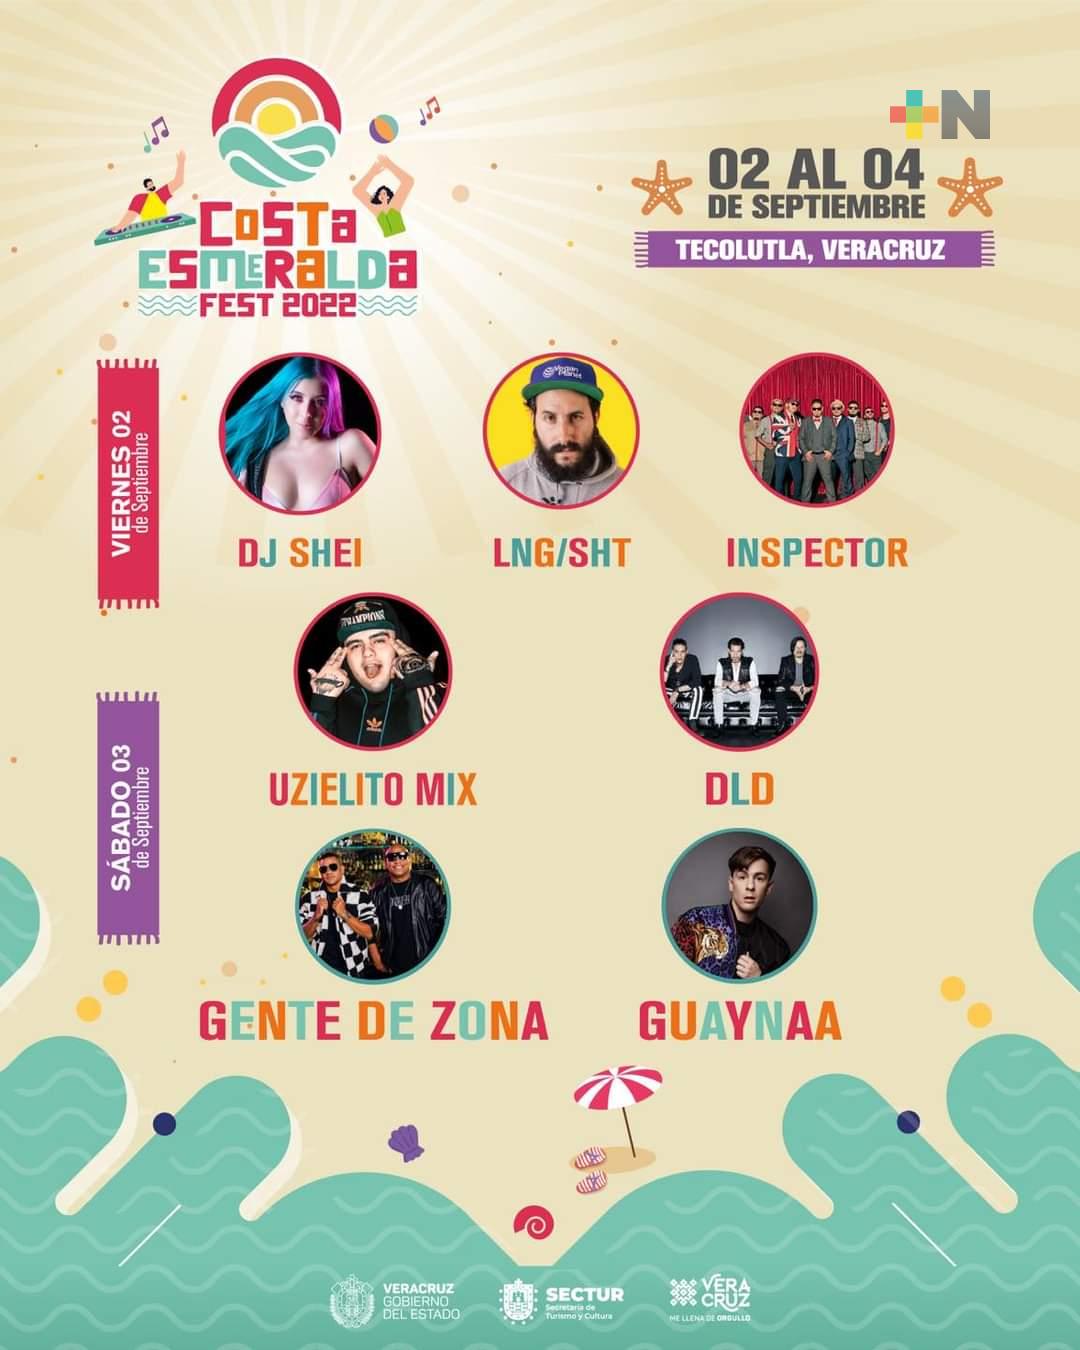 Costa Esmeralda Fest 2022 espera a sus visitantes del 2 al 4 de septiembre